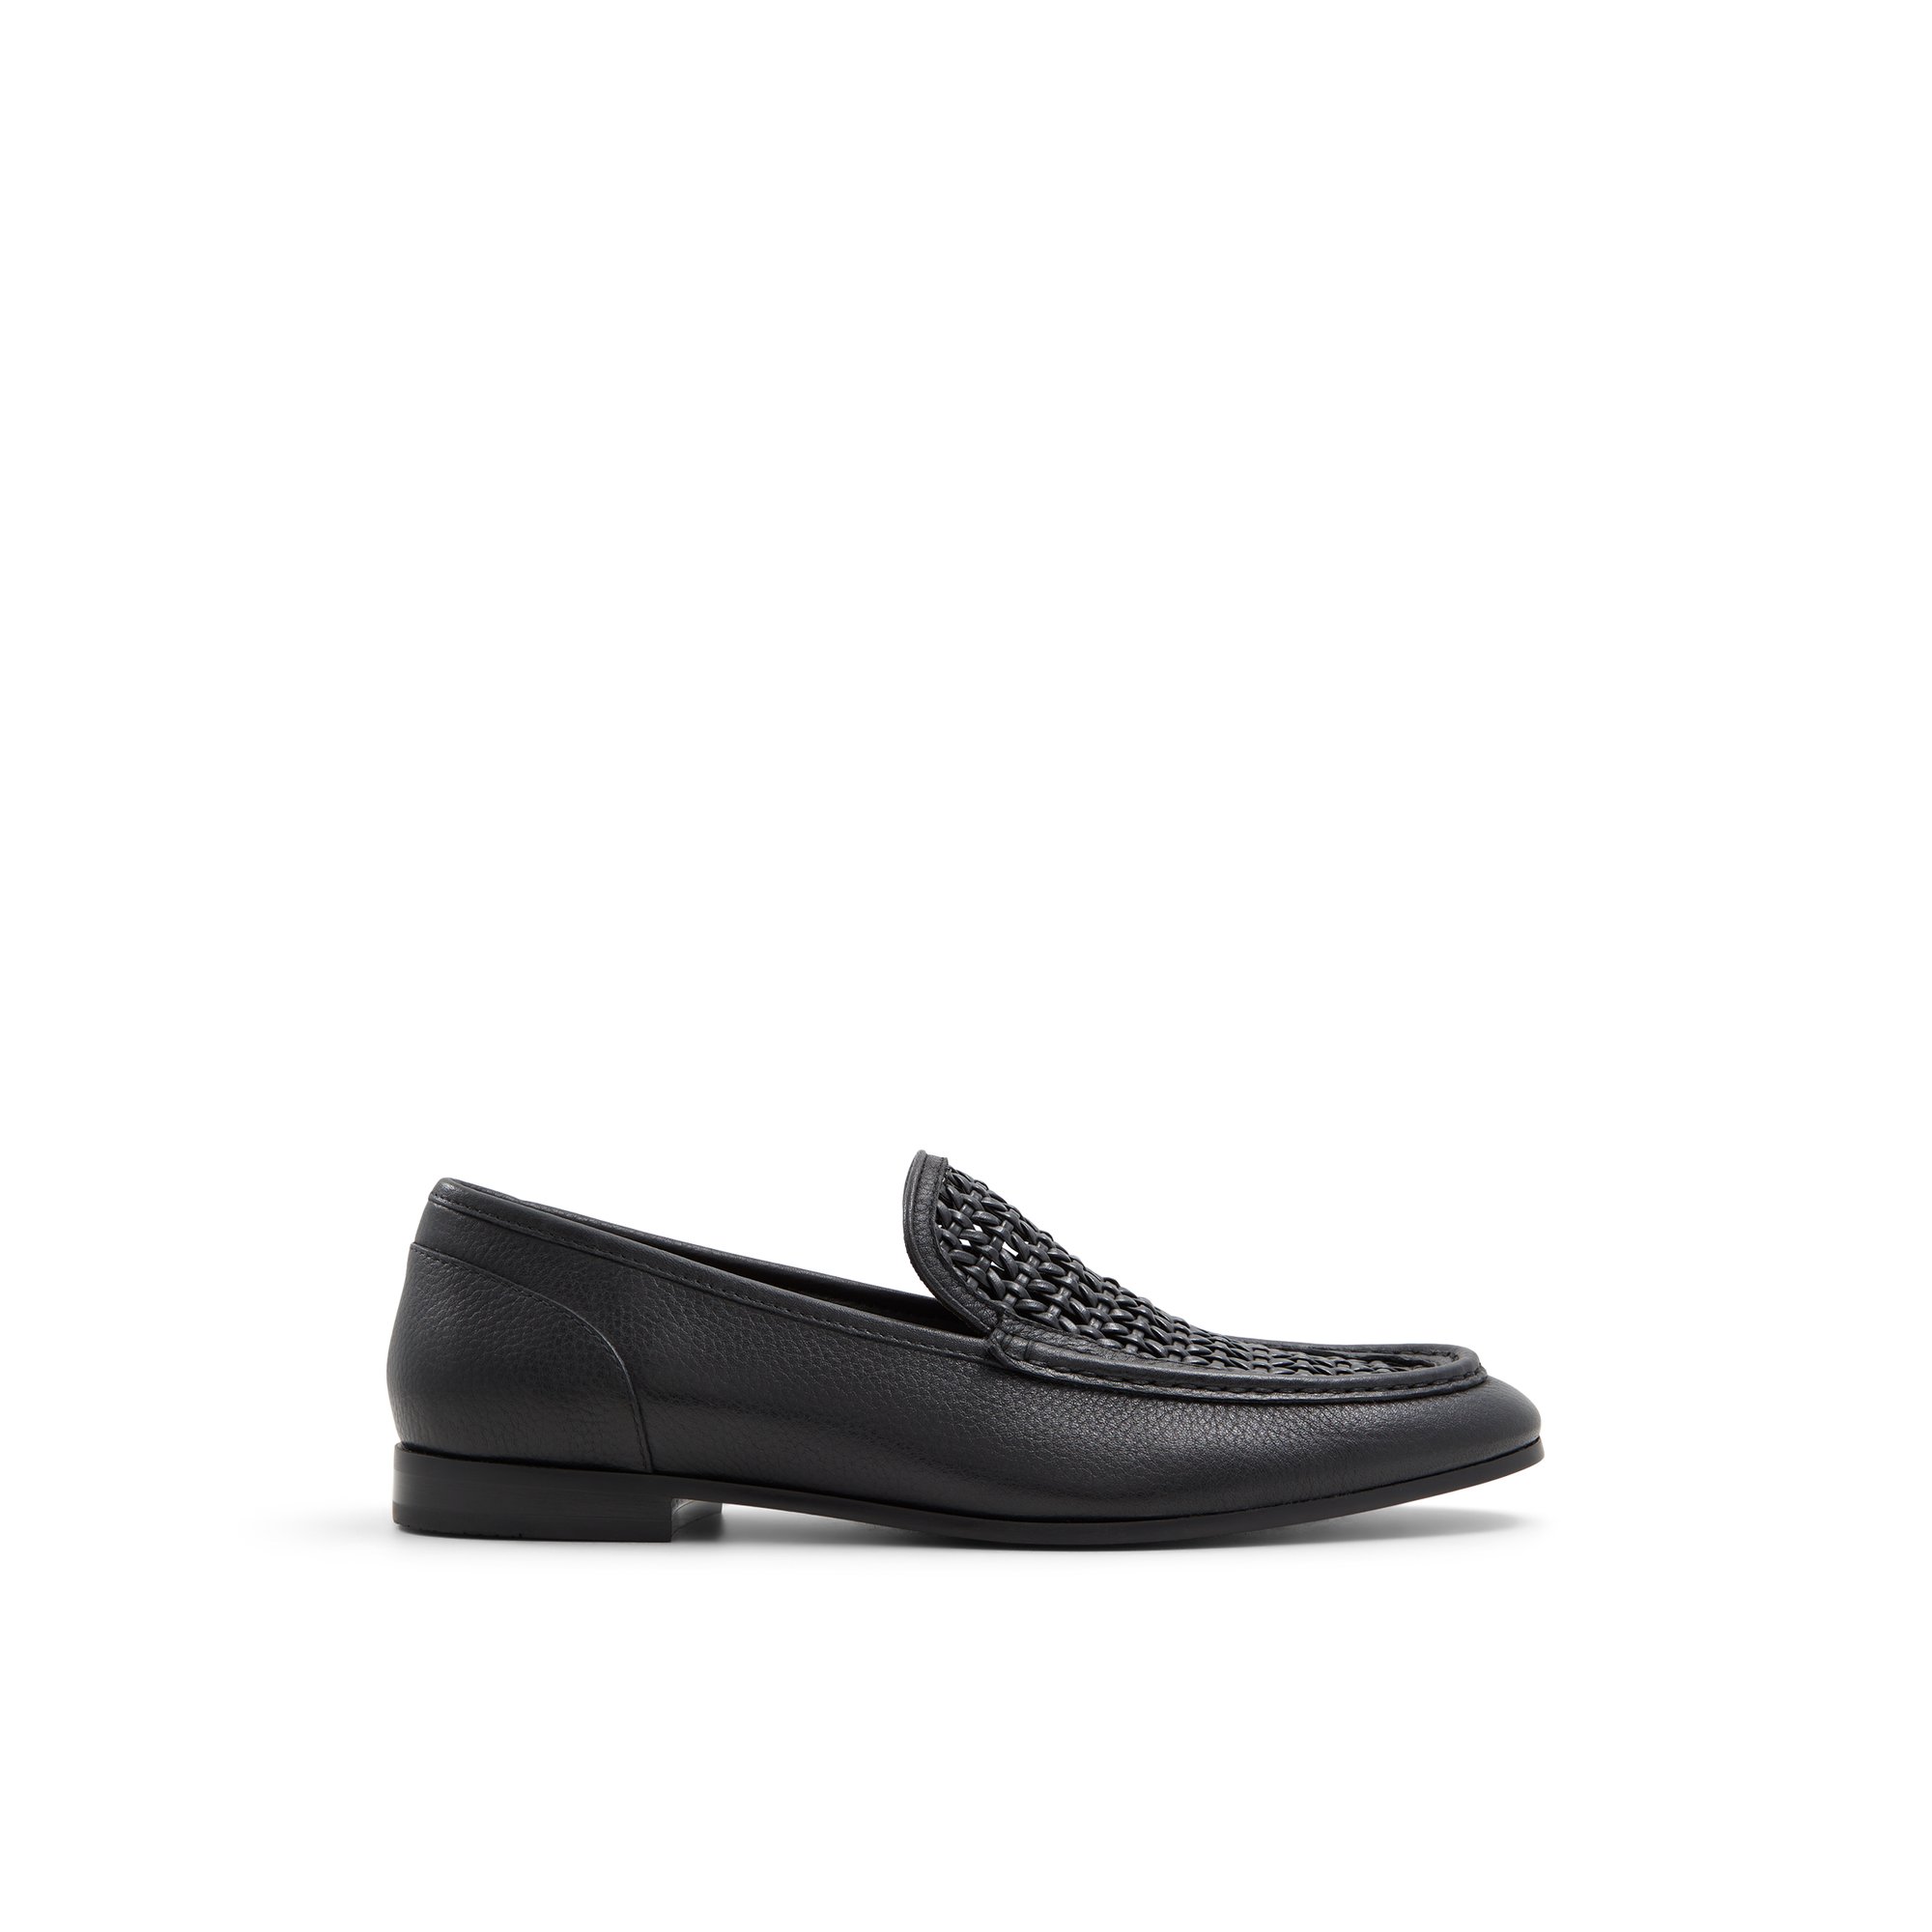 ALDO Porttland - Men's Loafers and Slip on - Black